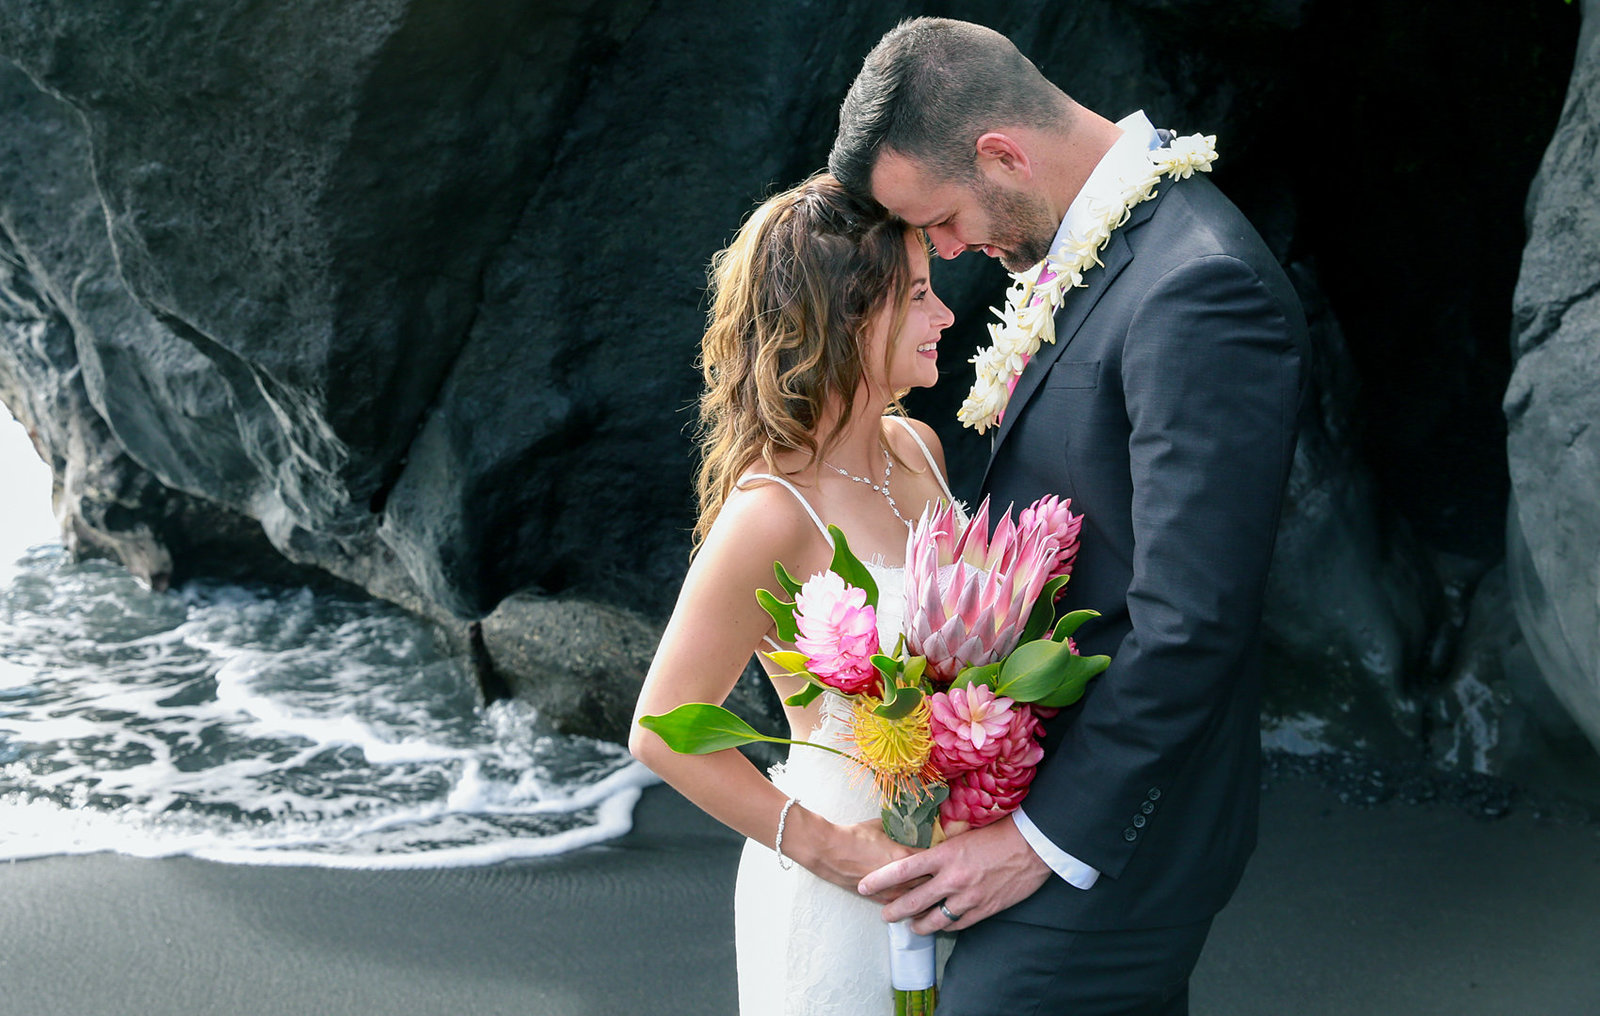 Kauai weddings